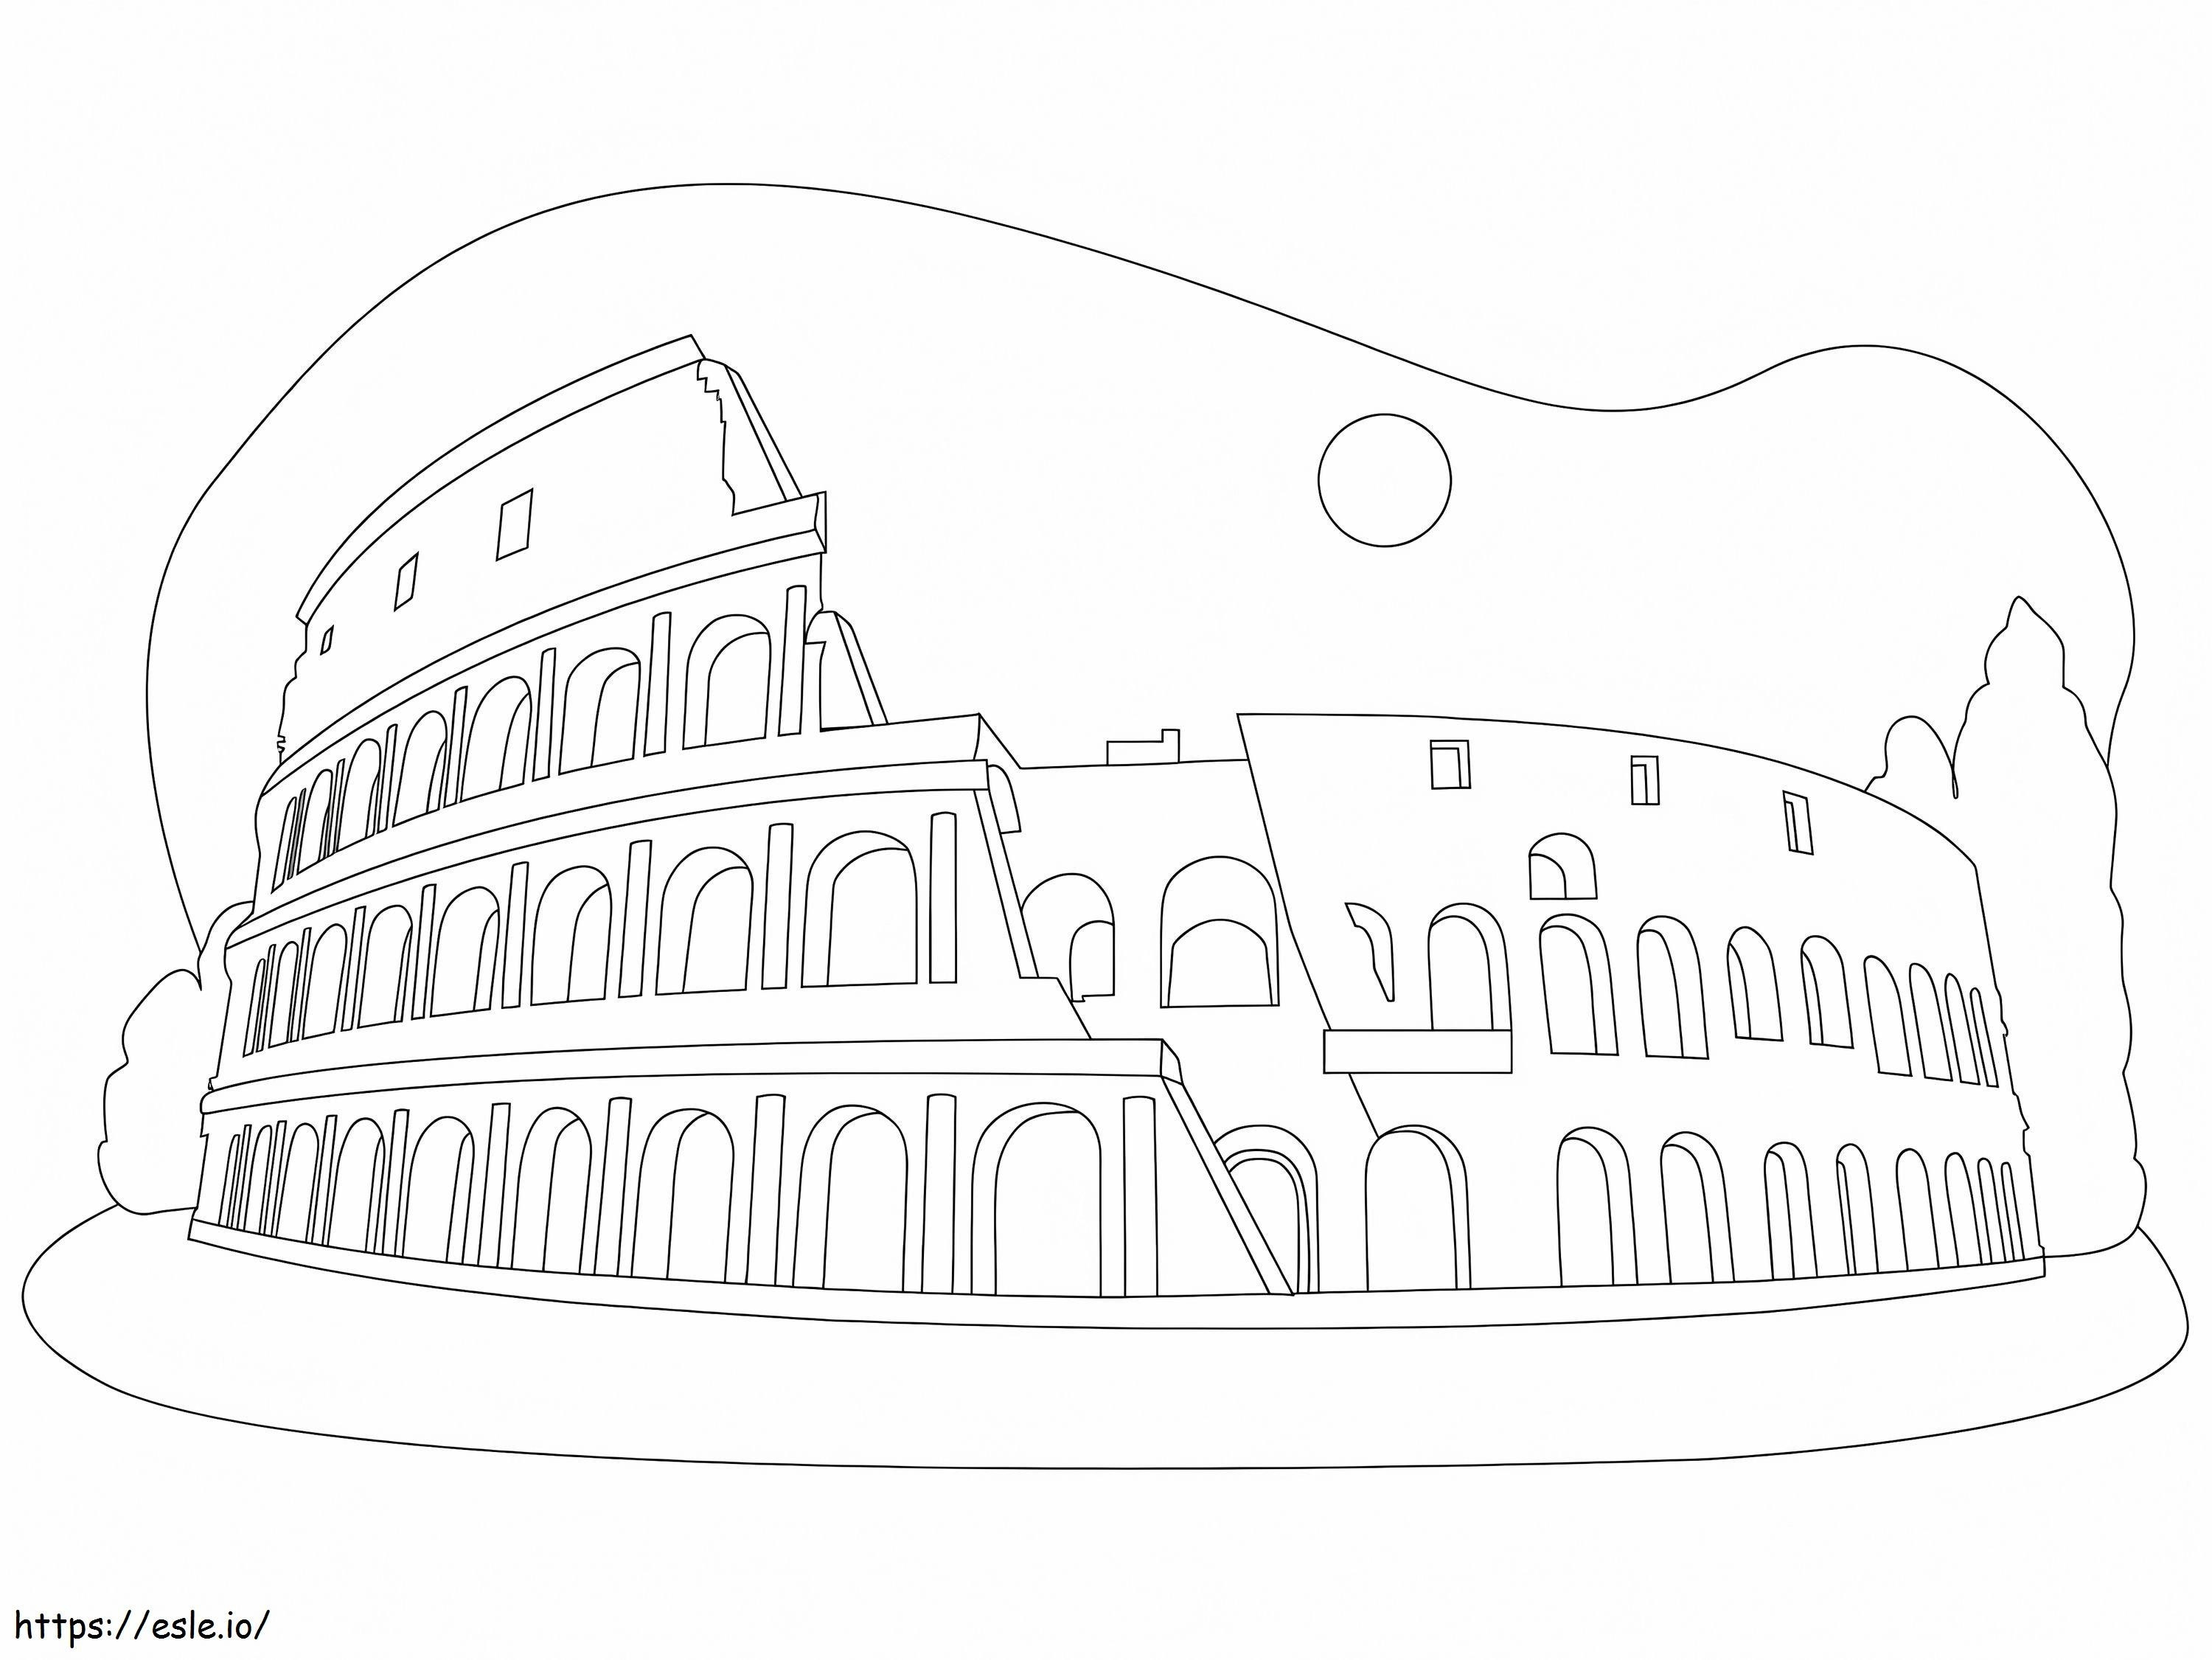 O Coliseu para colorir